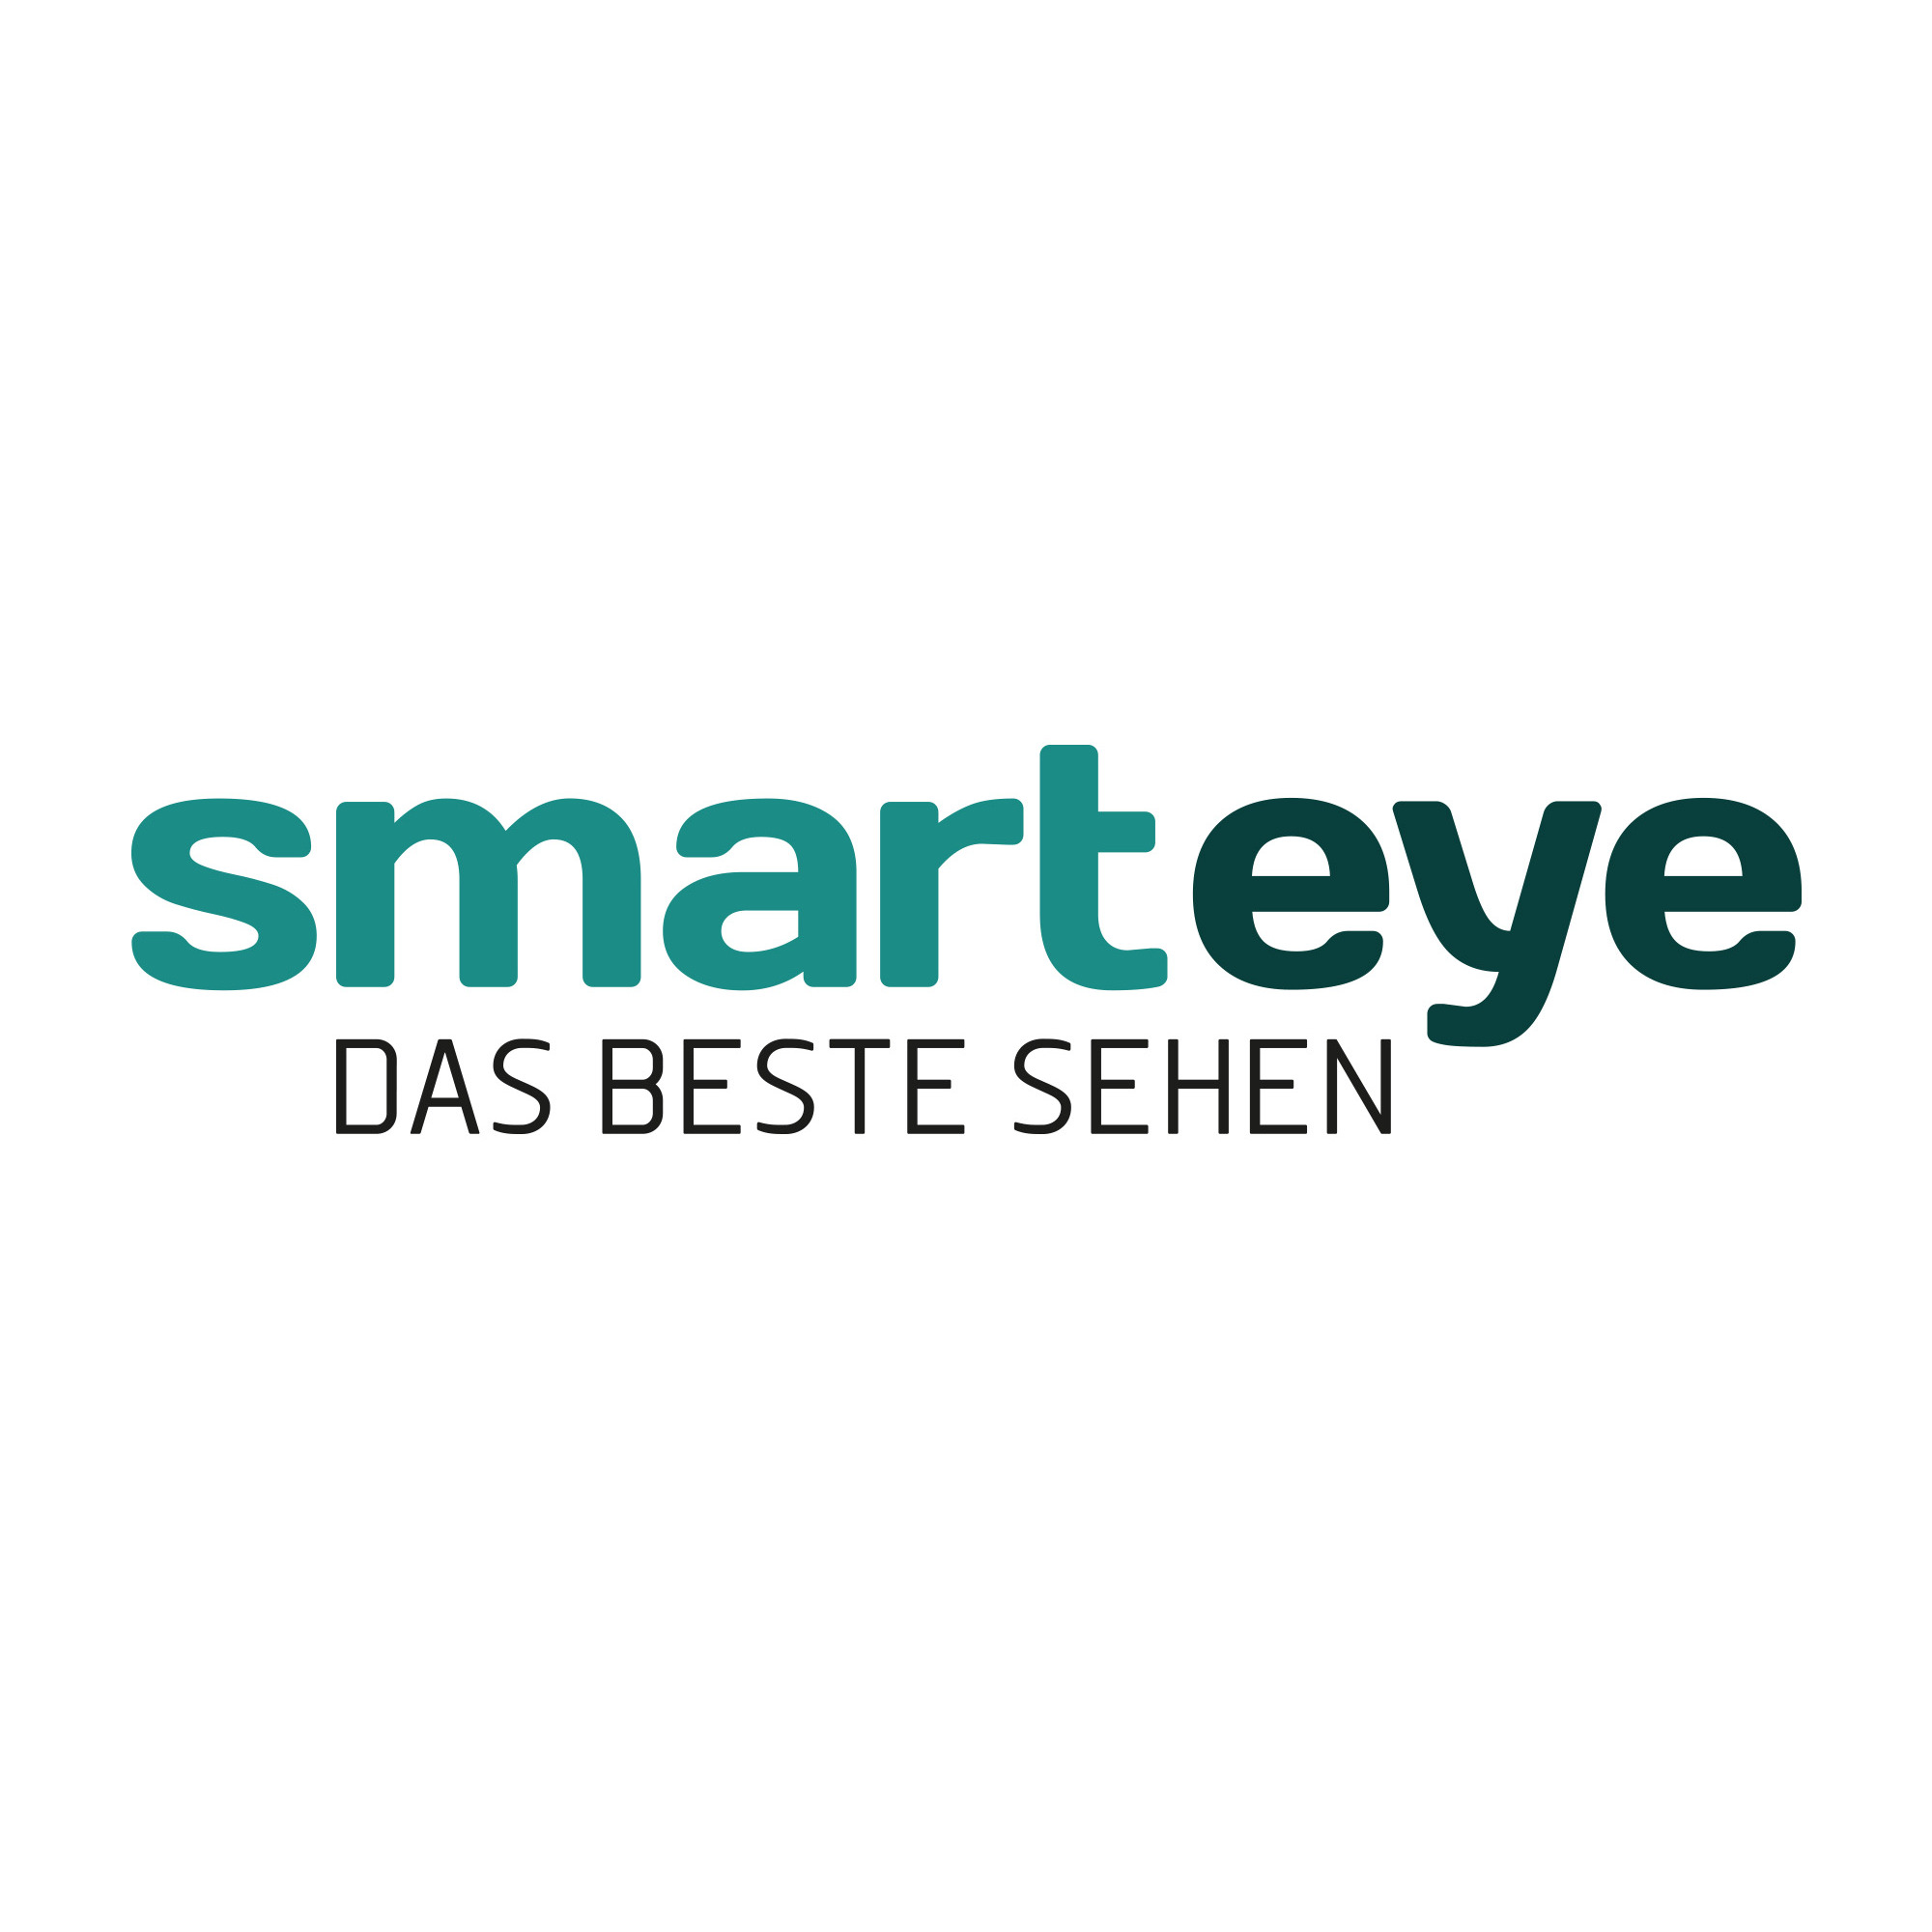 Smarteye Verden in Verden an der Aller - Logo